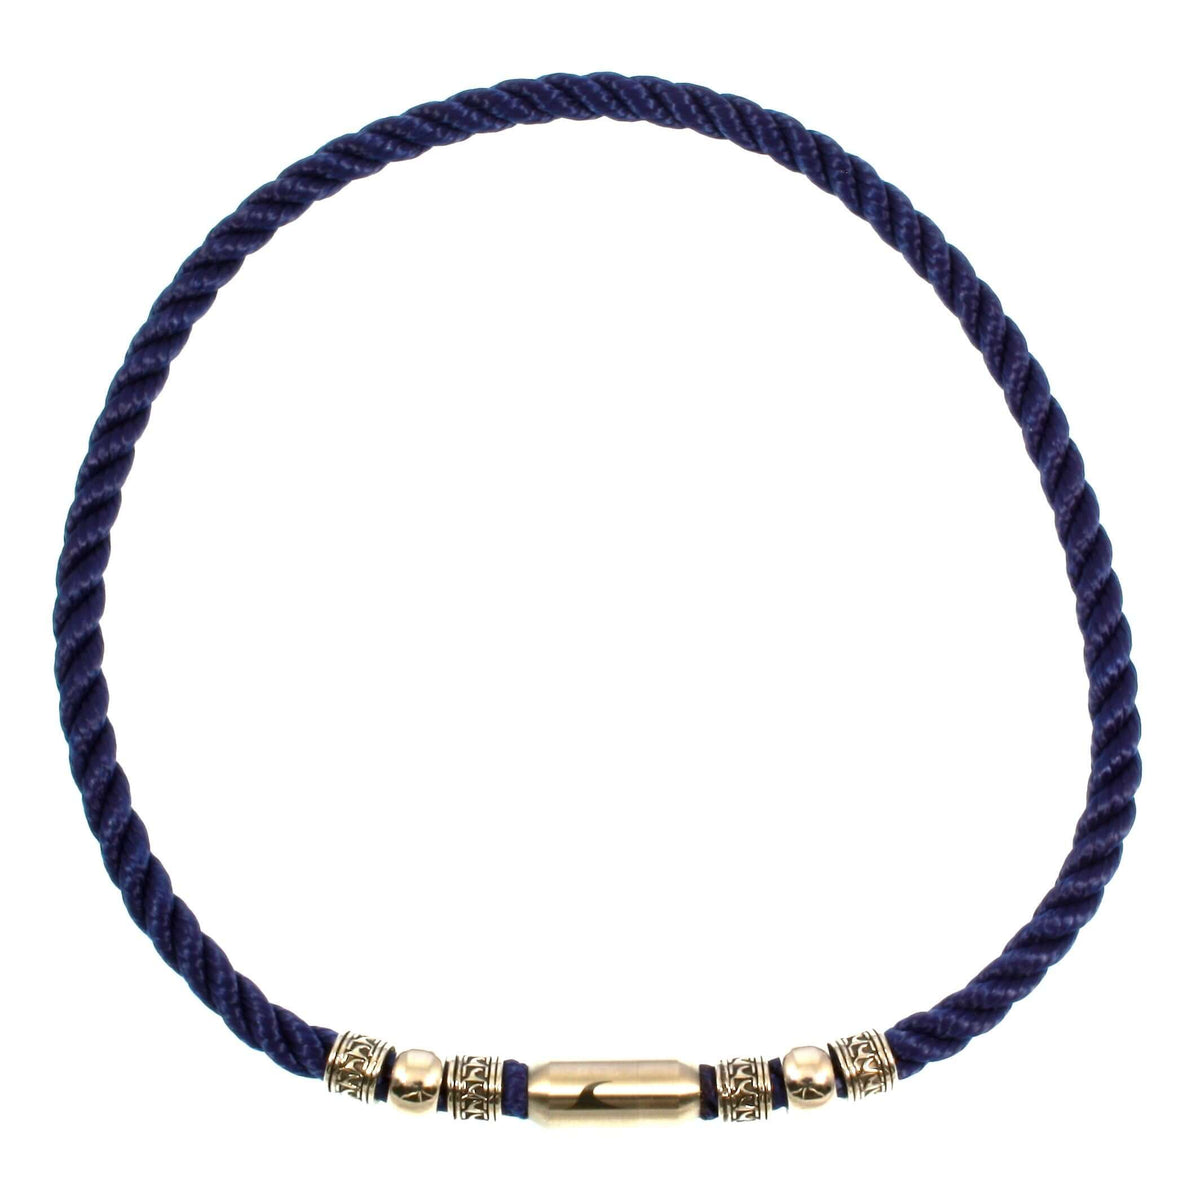 Herren-leder-halskette-damen-atoll-blau-silber-geflochten-Edelstahlverschluss-vorn-wavepirate-shop-z8